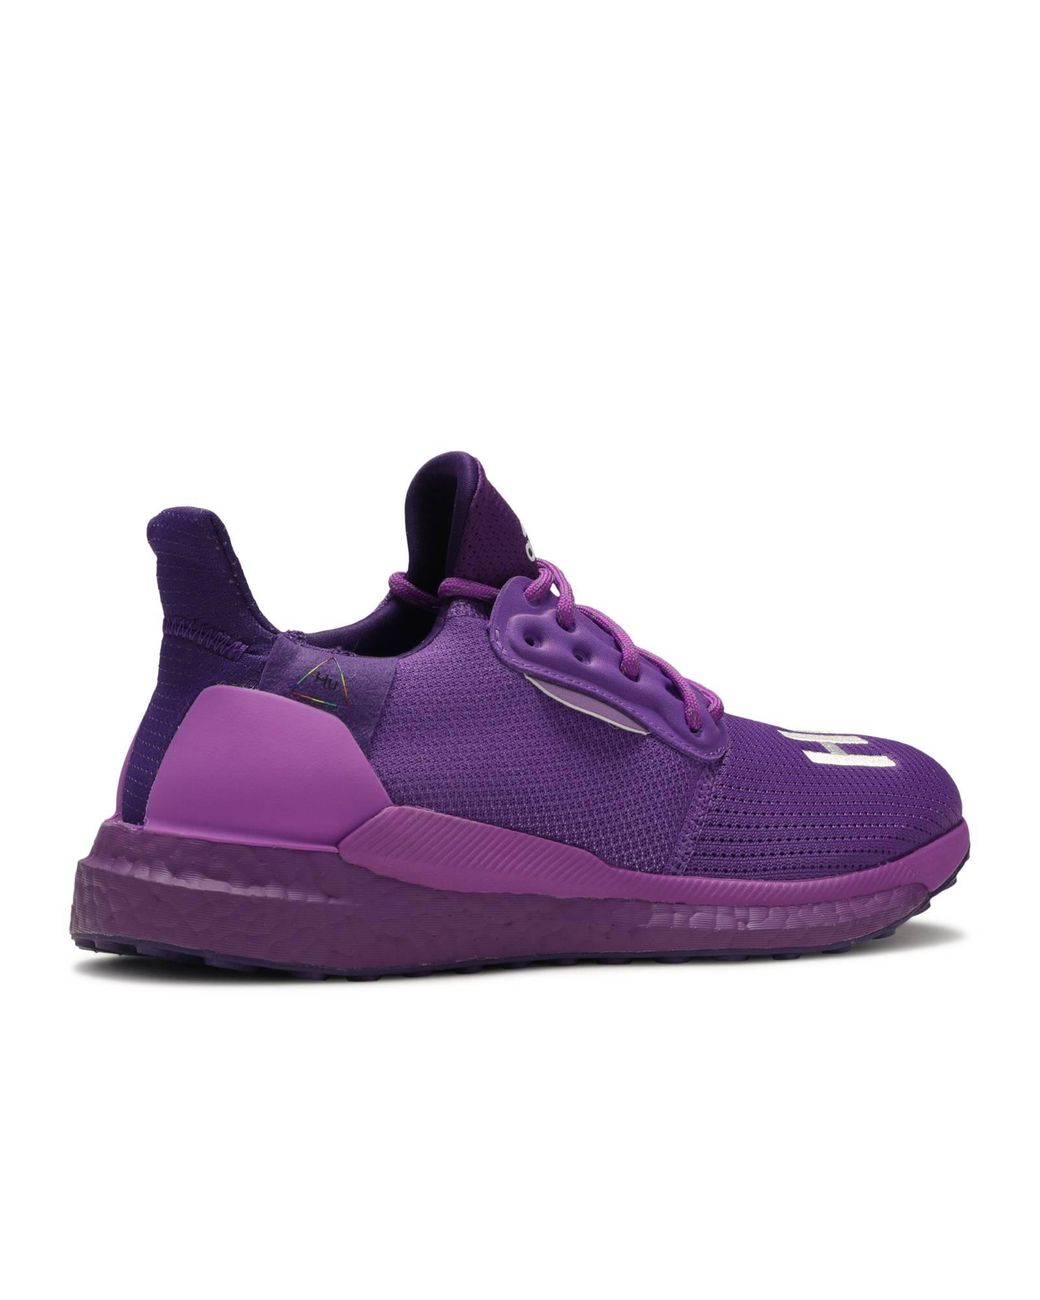 adidas nmd human race purple